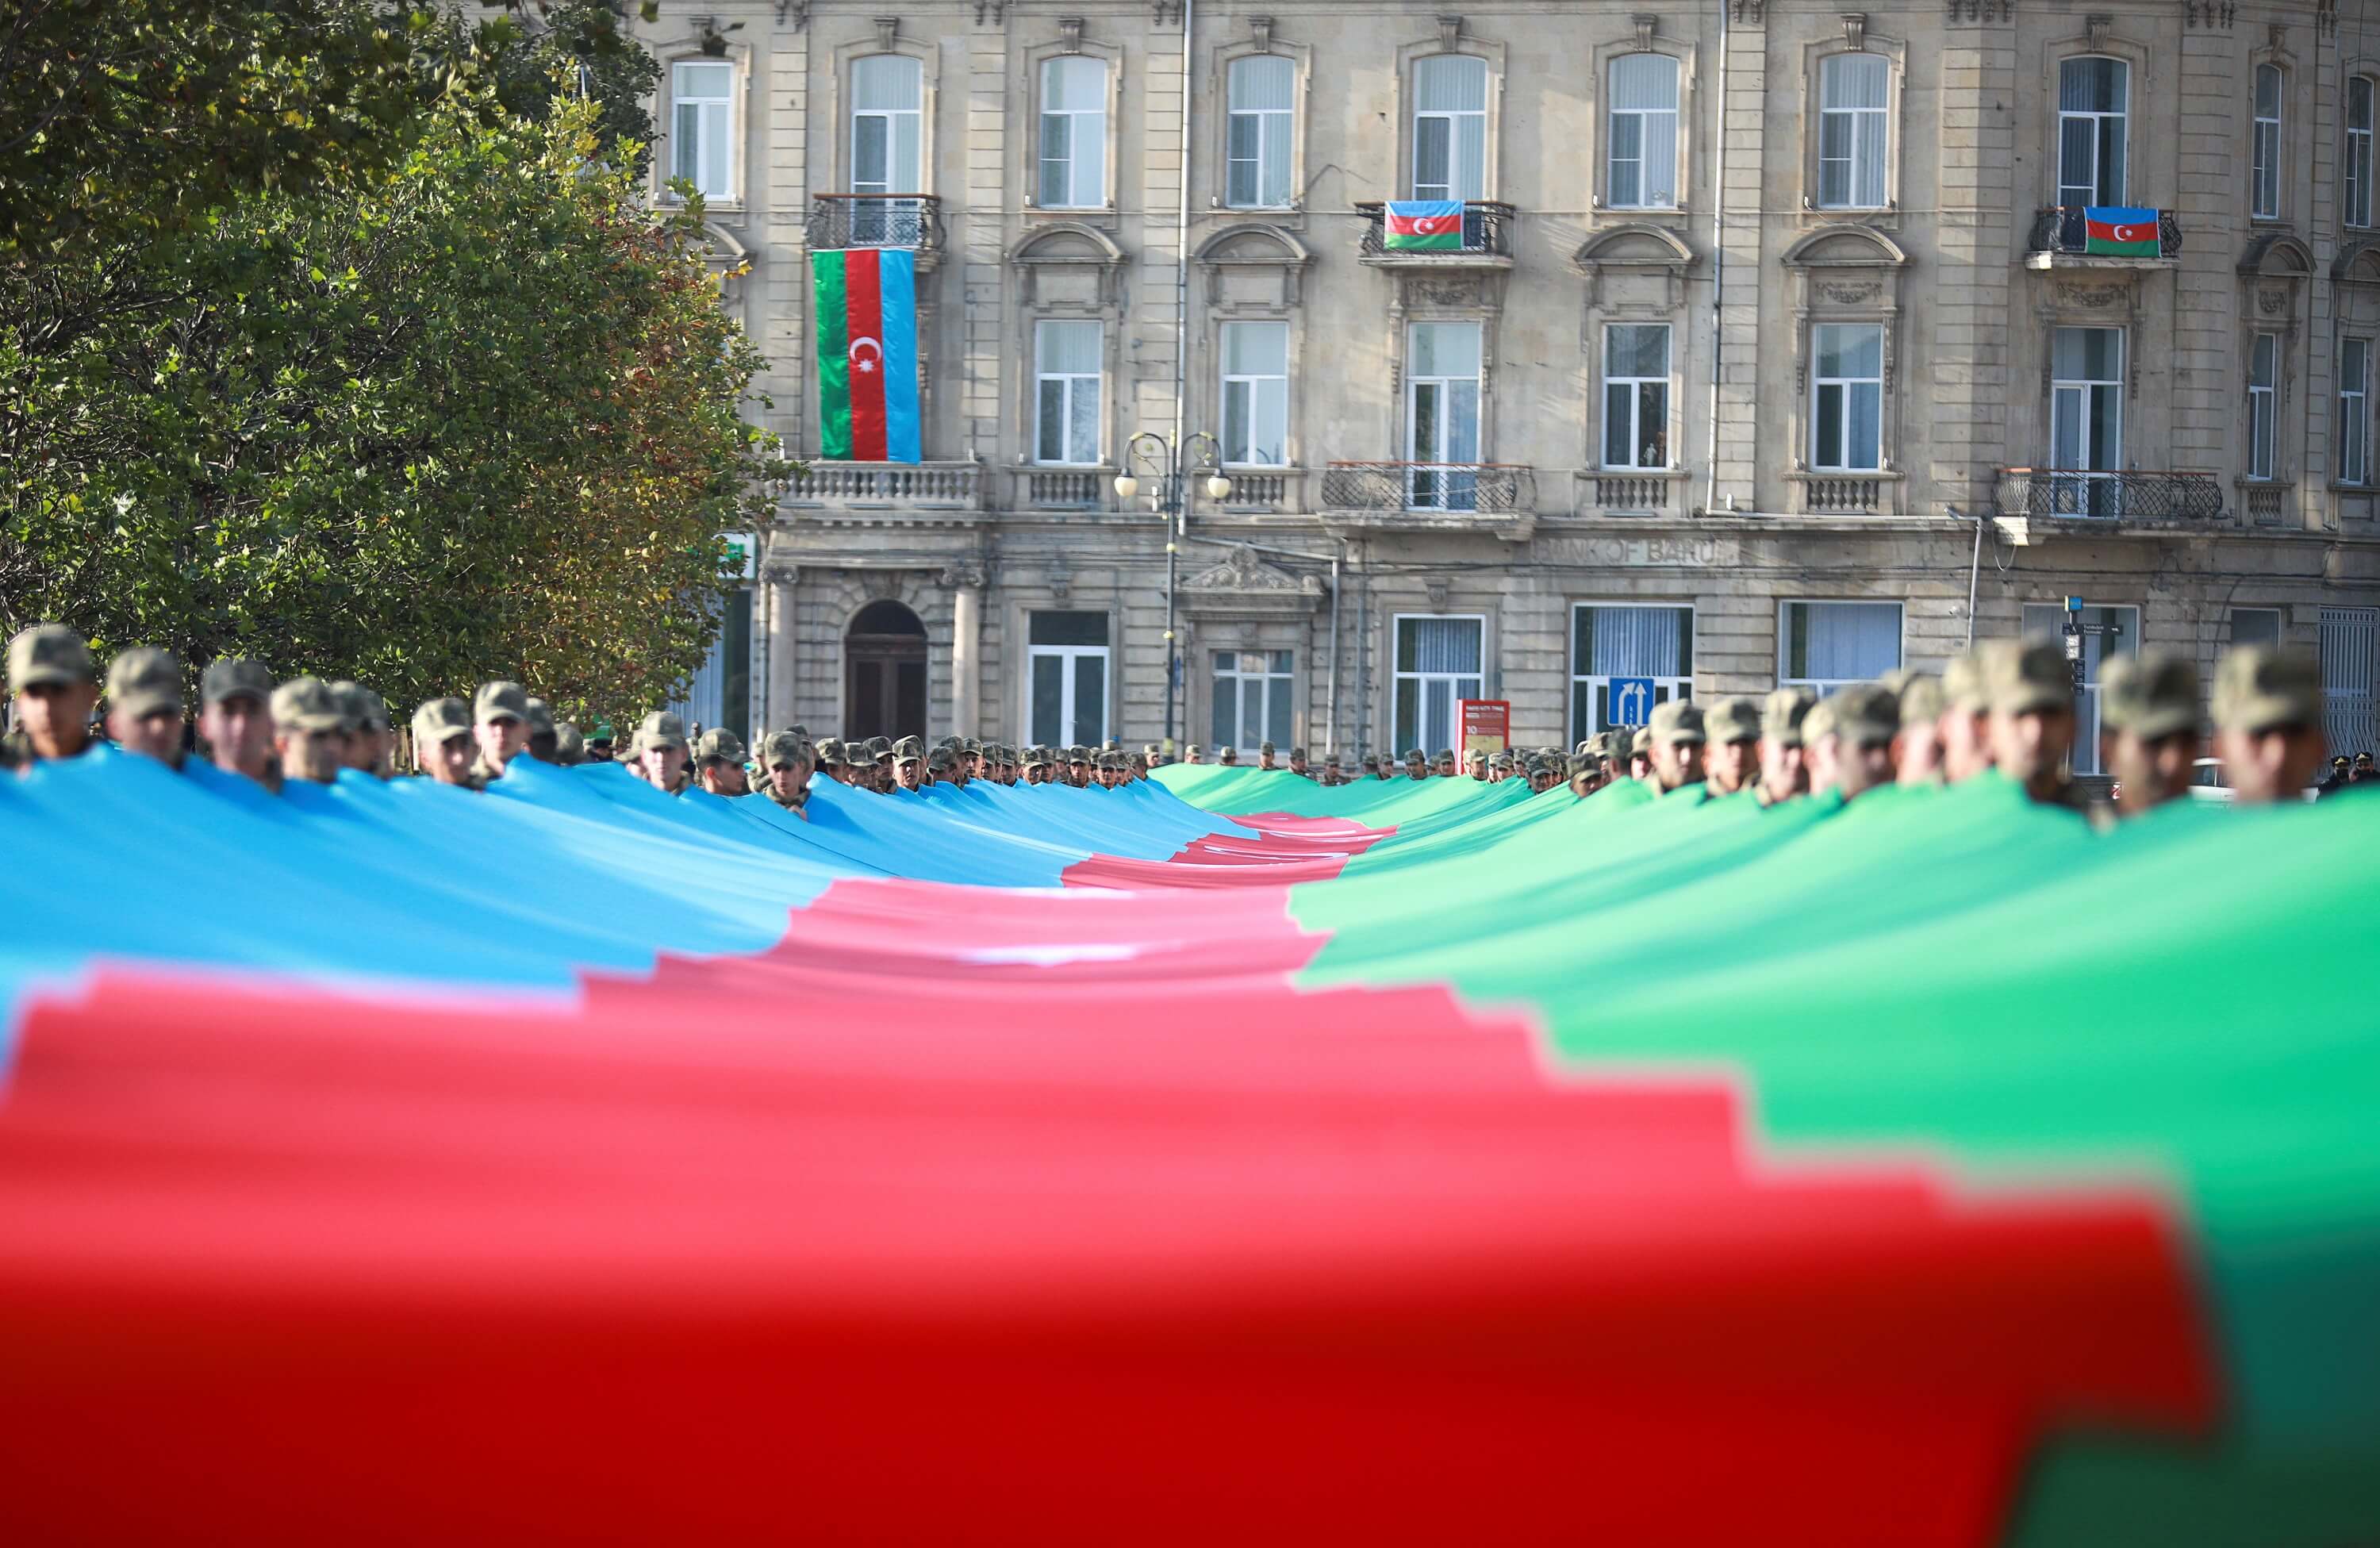 Azerbaijan marks anniversary of 2020 Nagorno-Karabakh war's end